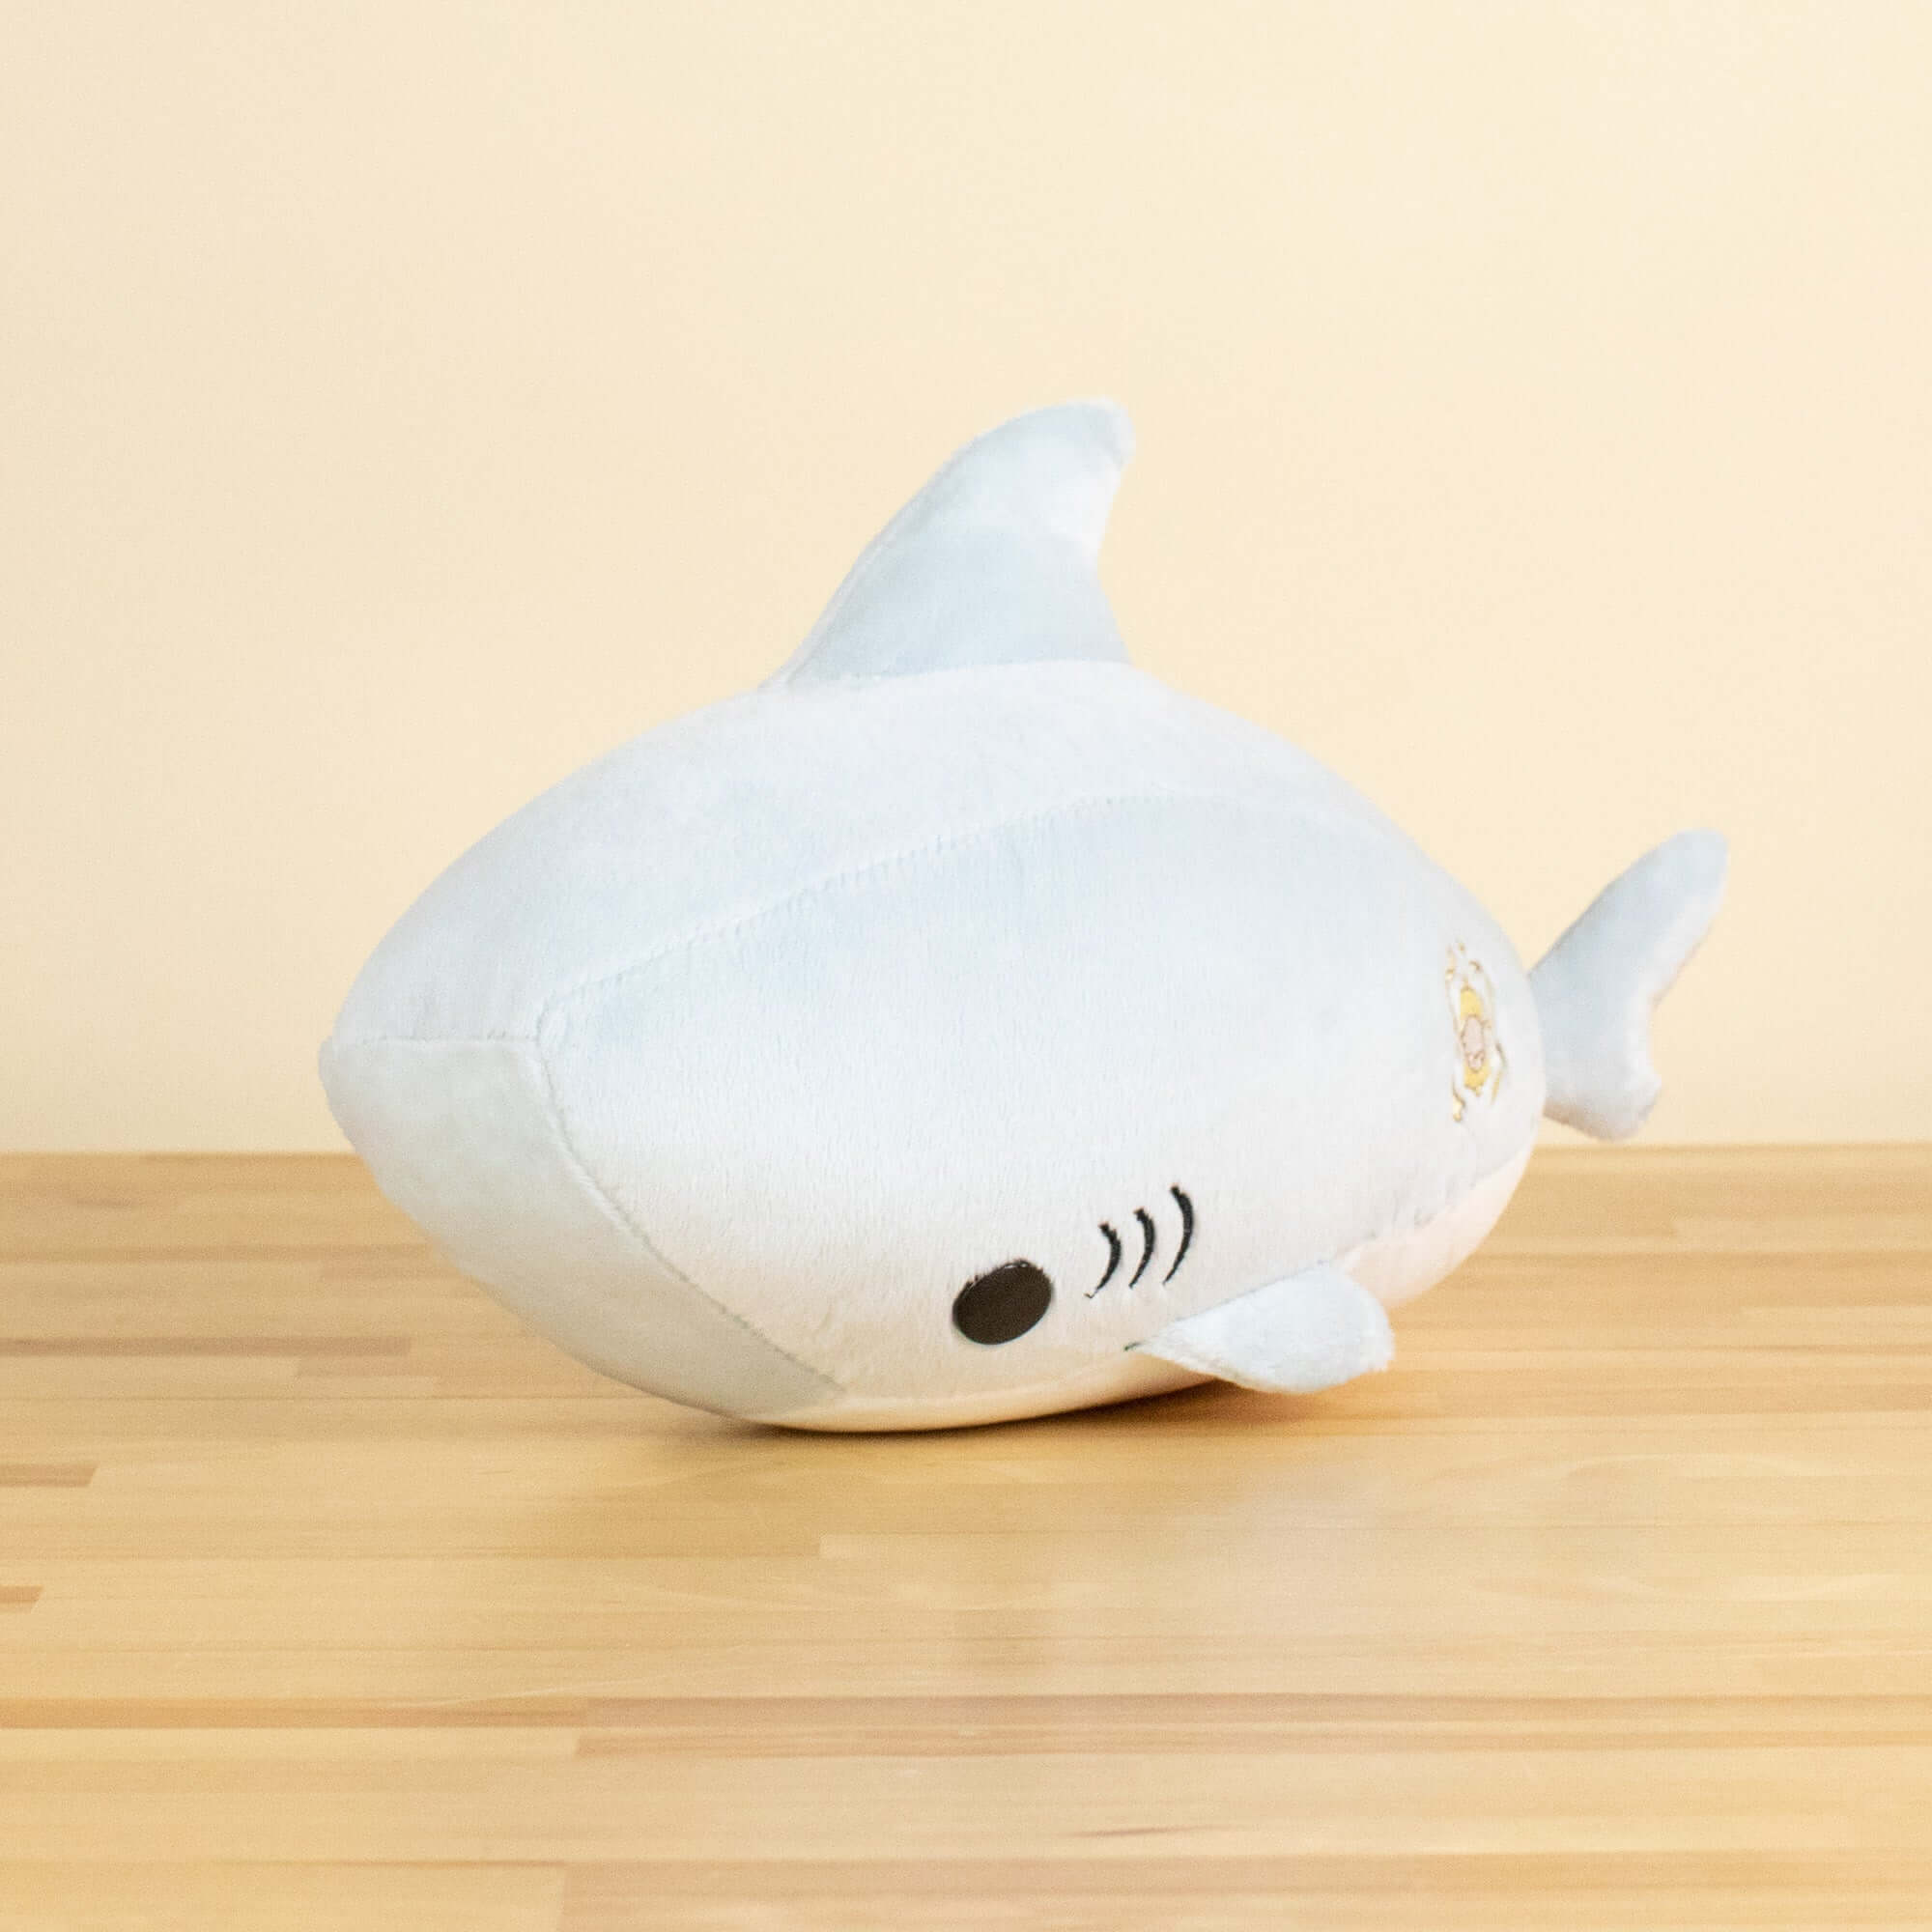 Sharki the Great White Shark - Shark Stuffed Animal